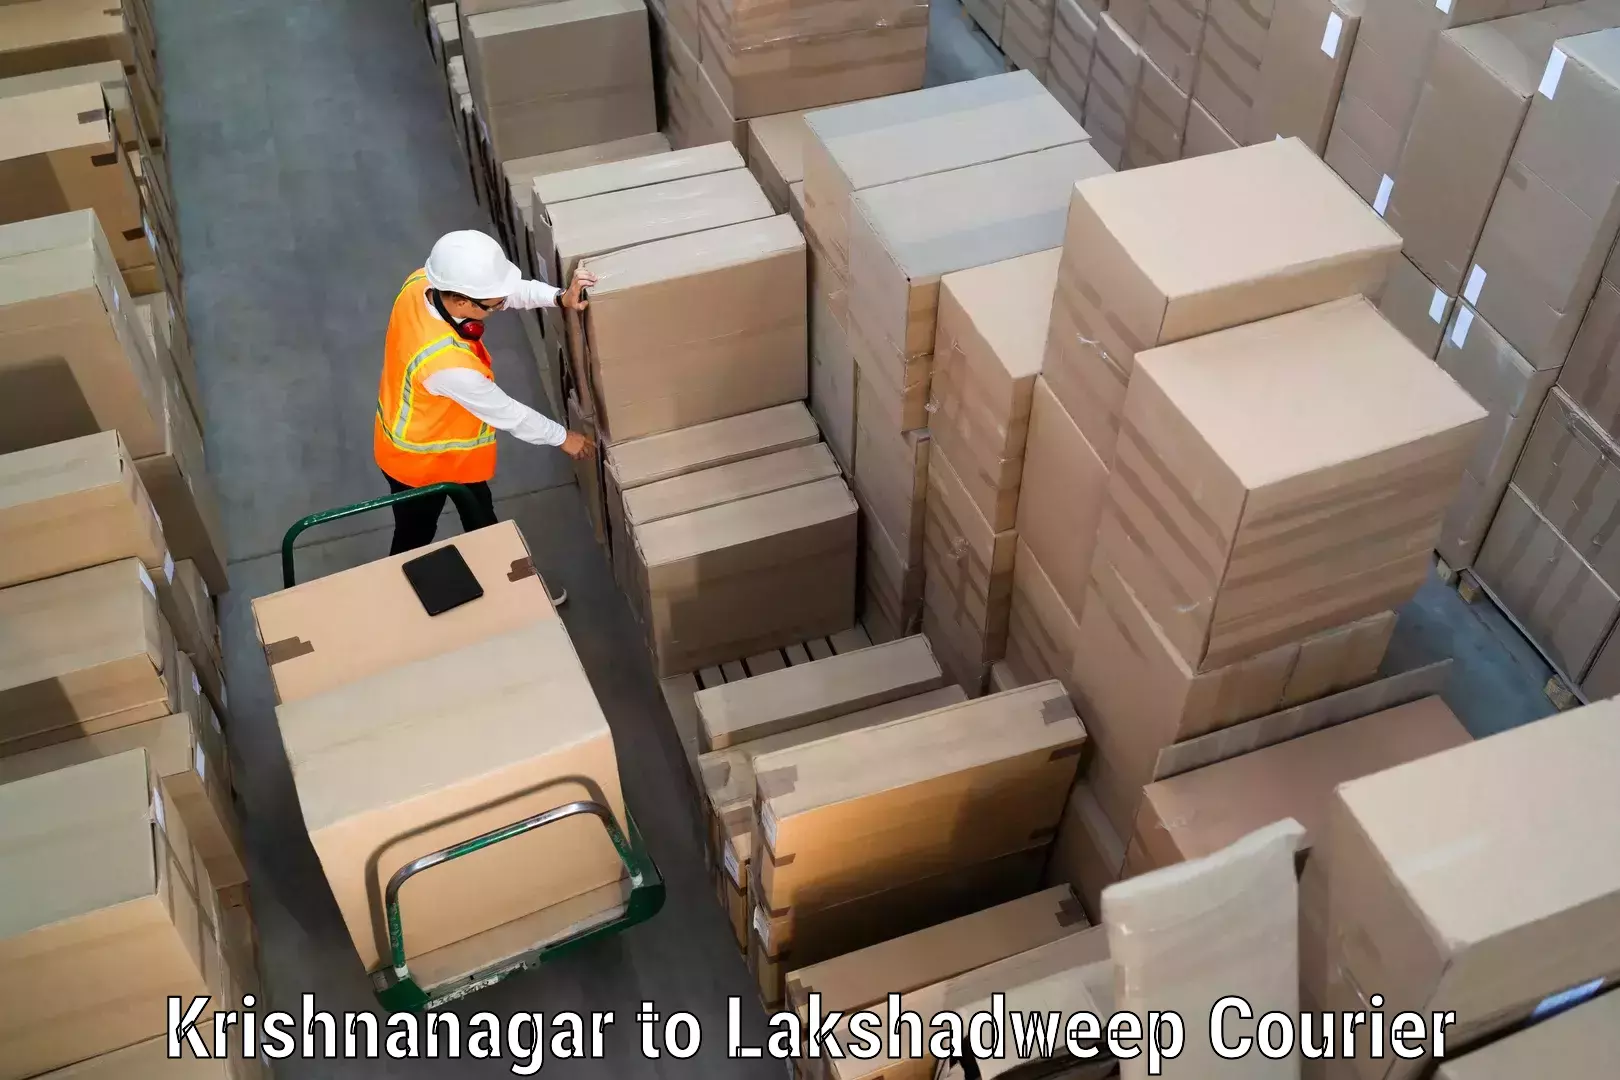 Express delivery capabilities Krishnanagar to Lakshadweep